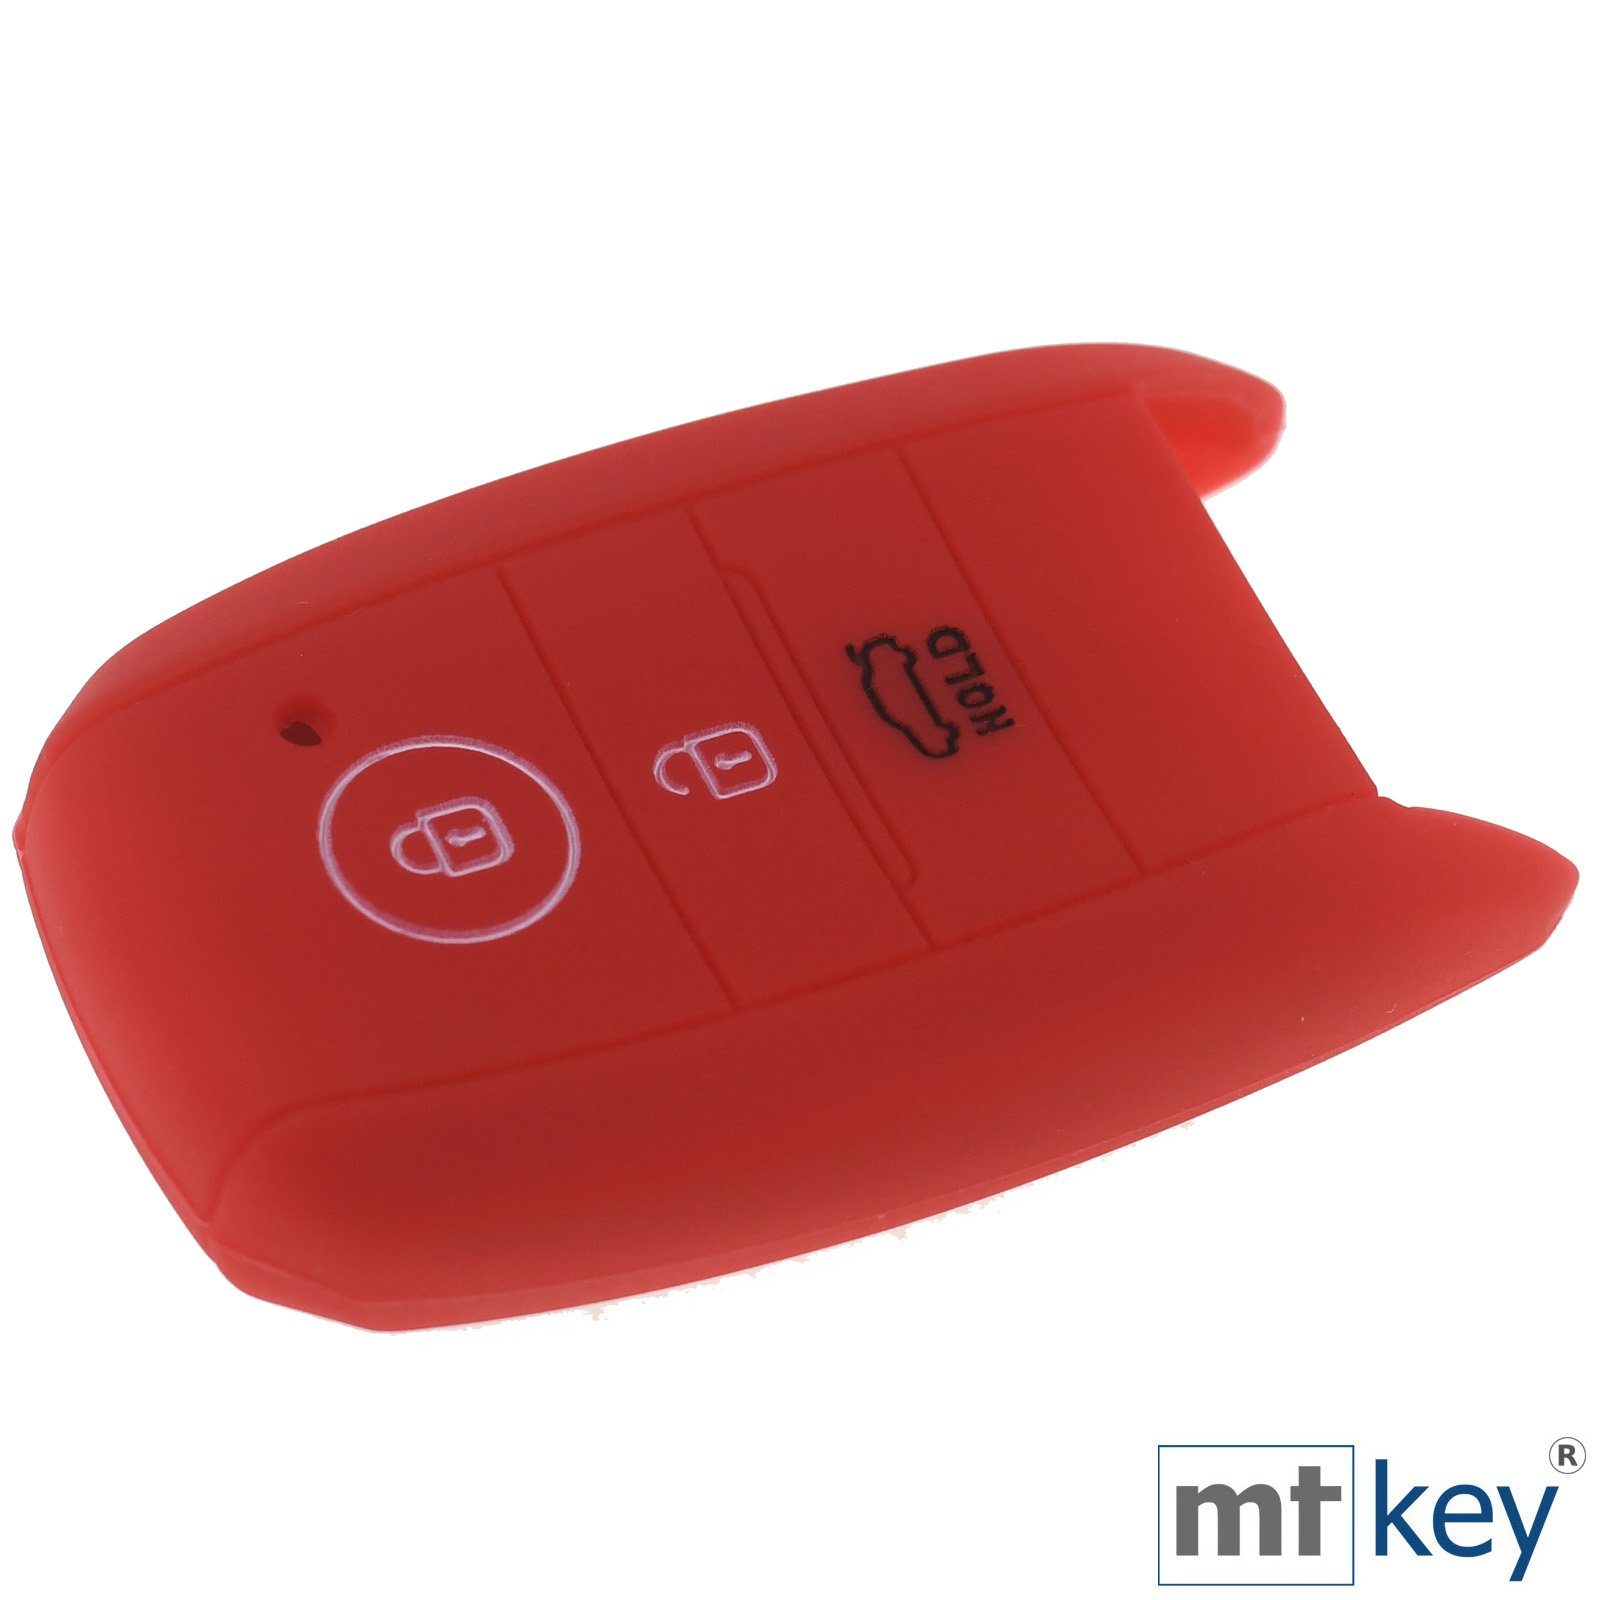 Rot, Silikon mt-key Softcase Picantio Sportage Stonic 3 Tasten Schutzhülle KEYLESS Ceed KIA Schlüsseltasche für Autoschlüssel Soul Rio